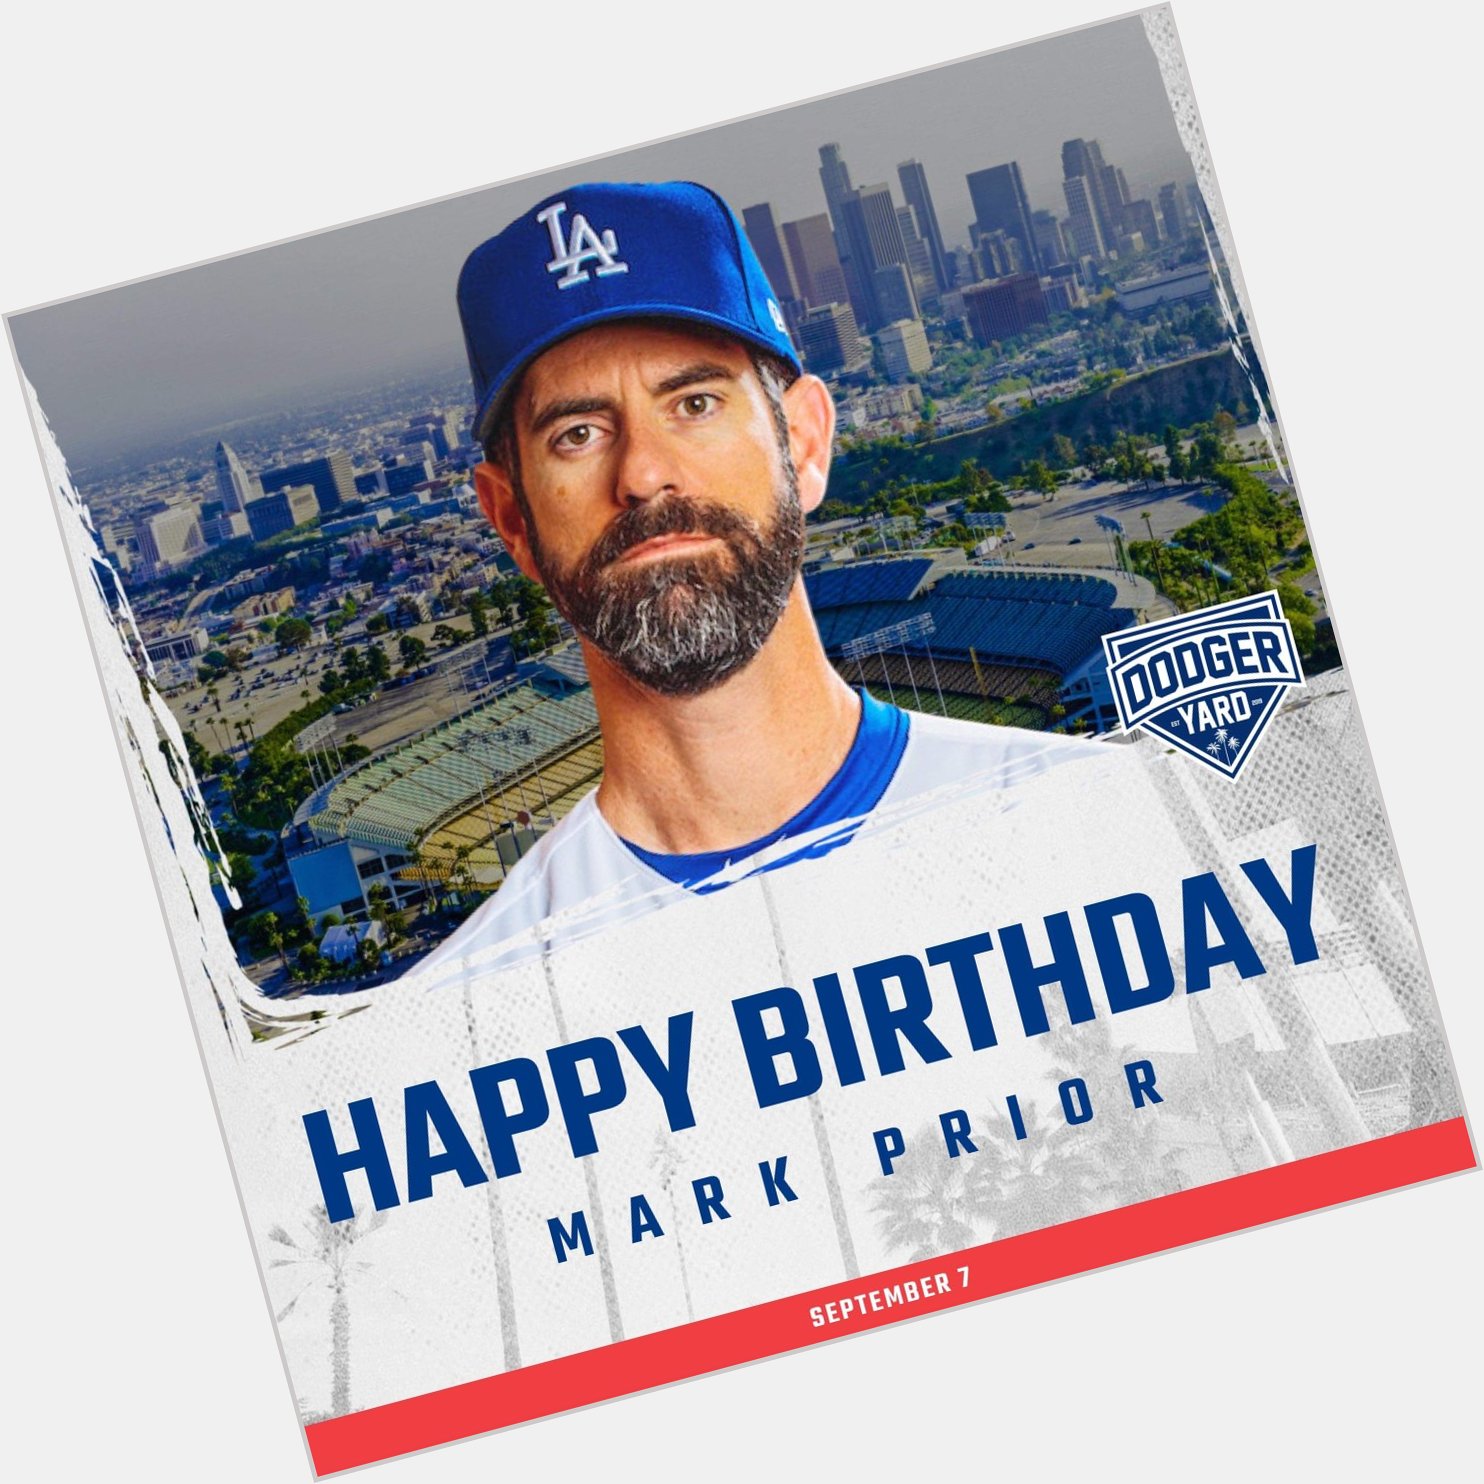 Happy birthday, Mark Prior! 